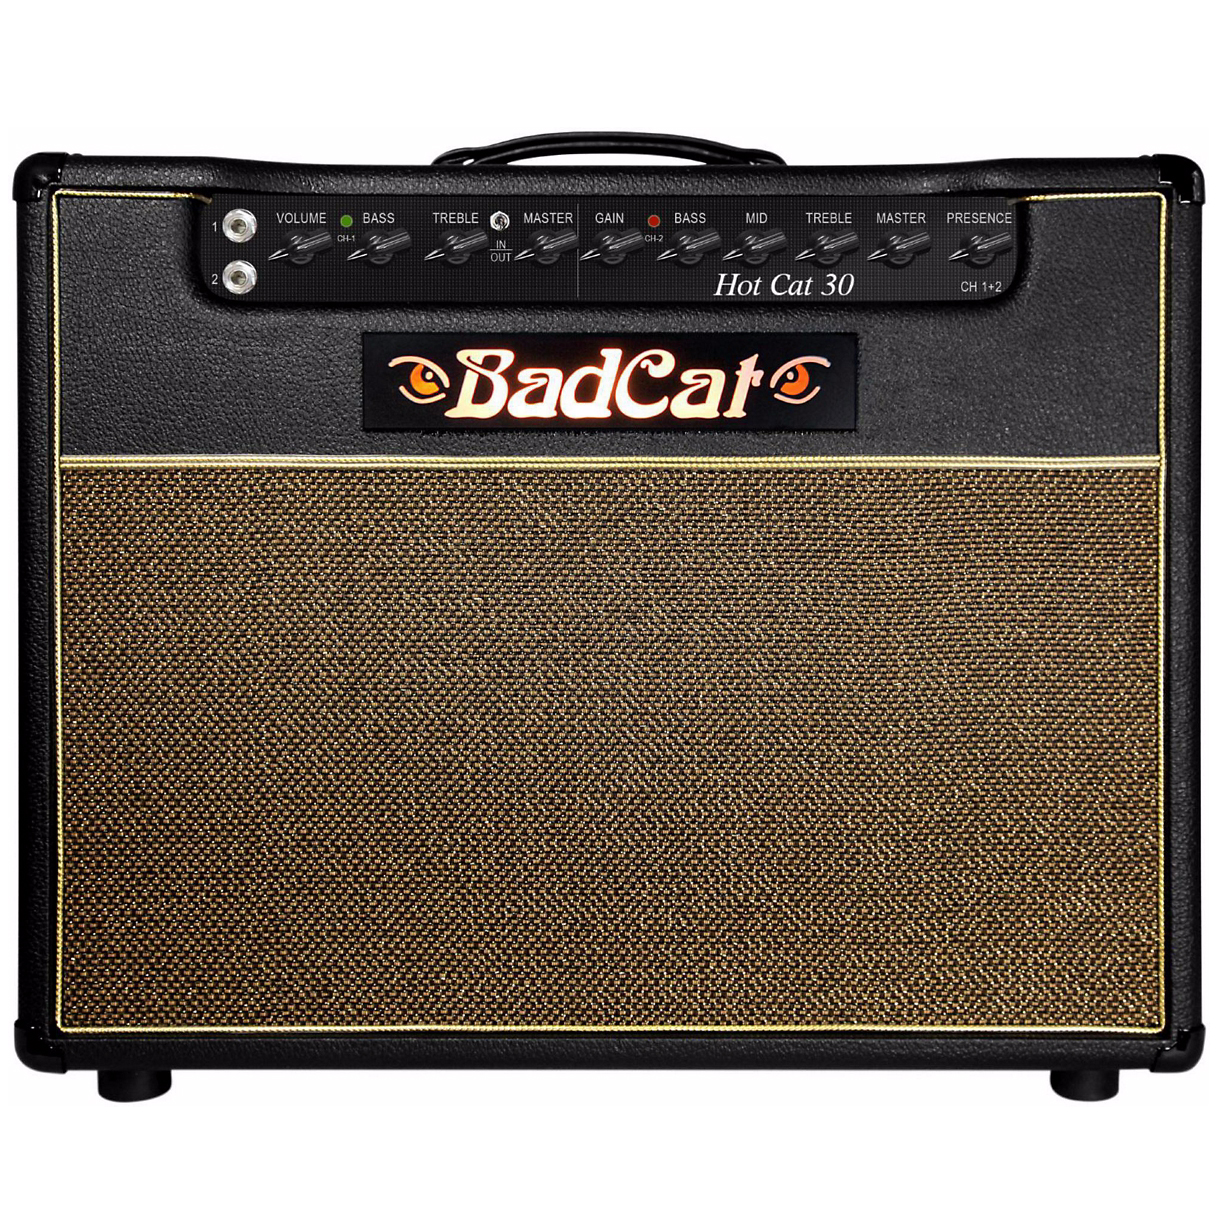 Bad Cat Hot Cat 30 1x12 - Combo amplificador para guitarra eléctrica - Variation 1